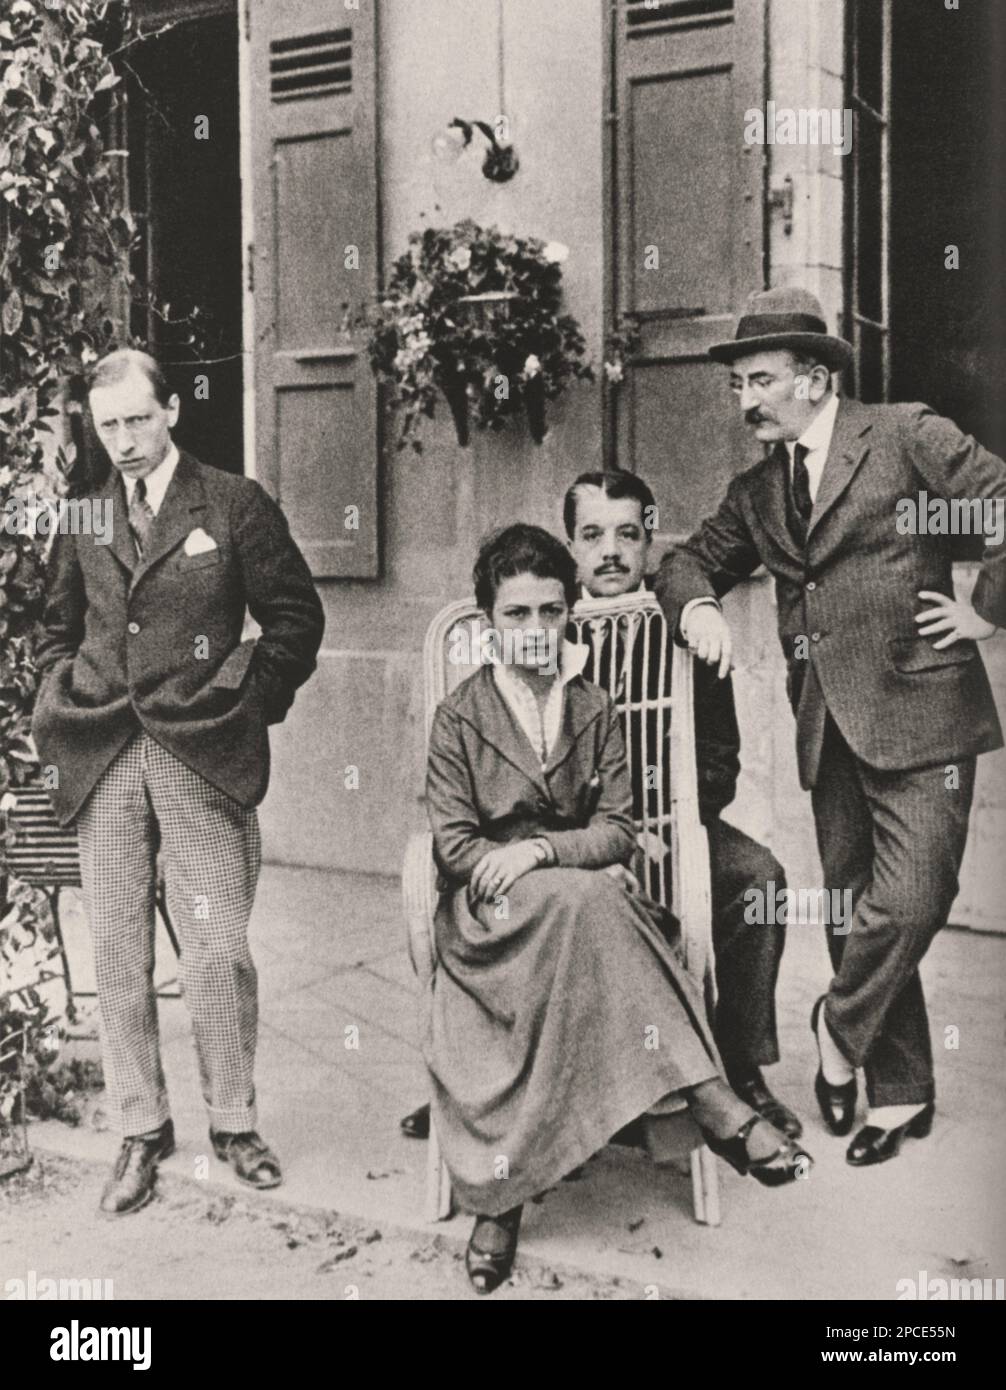 1915 , Lausanne , Switzerland : The russian music composer IGOR STRAVINSKY ( 1882 - 1971 ) with RUZHENA KHVOSHCHINSKAIA ( the wife of russian attaché at Russian Embassy in Rome , Italy ), SERGEI DIAGHILEV and the painter artist LEON BAKST . Expecially celebrated for his  ballets of early 1910's  FIREBIRD ( L'uccello di fuoco ), PETROUCHKA ( Petruska ) and THE RITE OF SPRINGS ( La saga della primavera ) . - BALLETS RUSSES  - Diagilev - Diagjlev - COMPOSITORE - OPERA LIRICA - CLASSICA - CLASSICAL - PORTRAIT - RITRATTO - MUSICISTA - MUSICA  - collar - colletto  - CRAVATTA - TIE - baffi - moustach Stock Photo